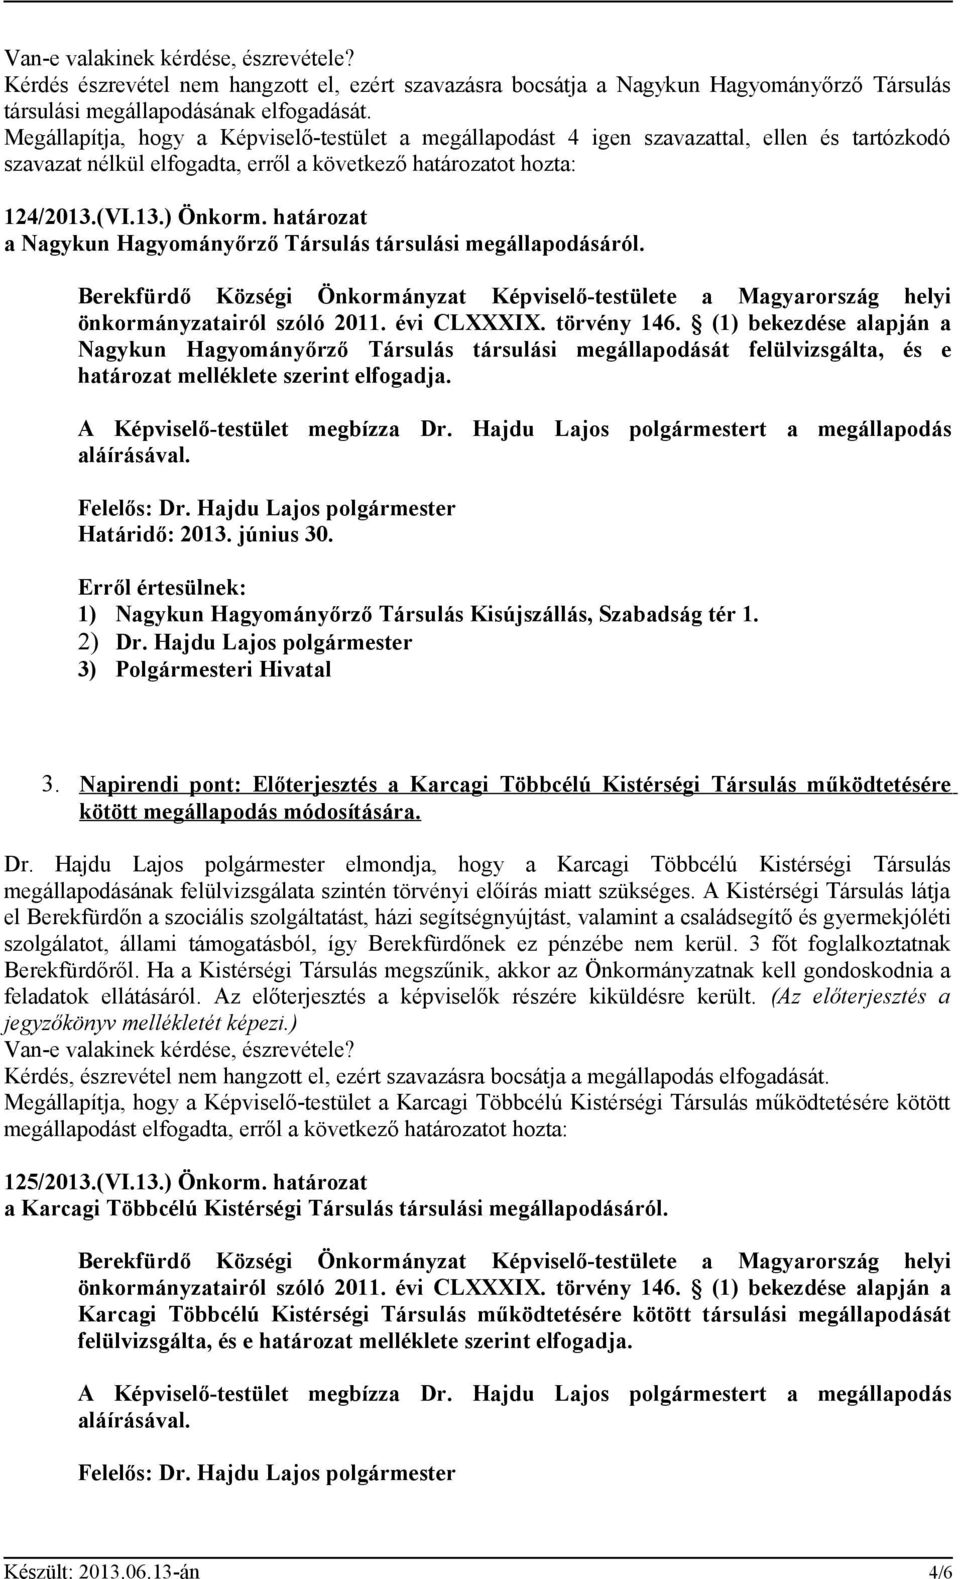 határozat a Nagykun Hagyományőrző Társulás társulási megállapodásáról. Berekfürdő Községi Önkormányzat Képviselő-testülete a Magyarország helyi önkormányzatairól szóló 2011. évi CLXXXIX. törvény 146.